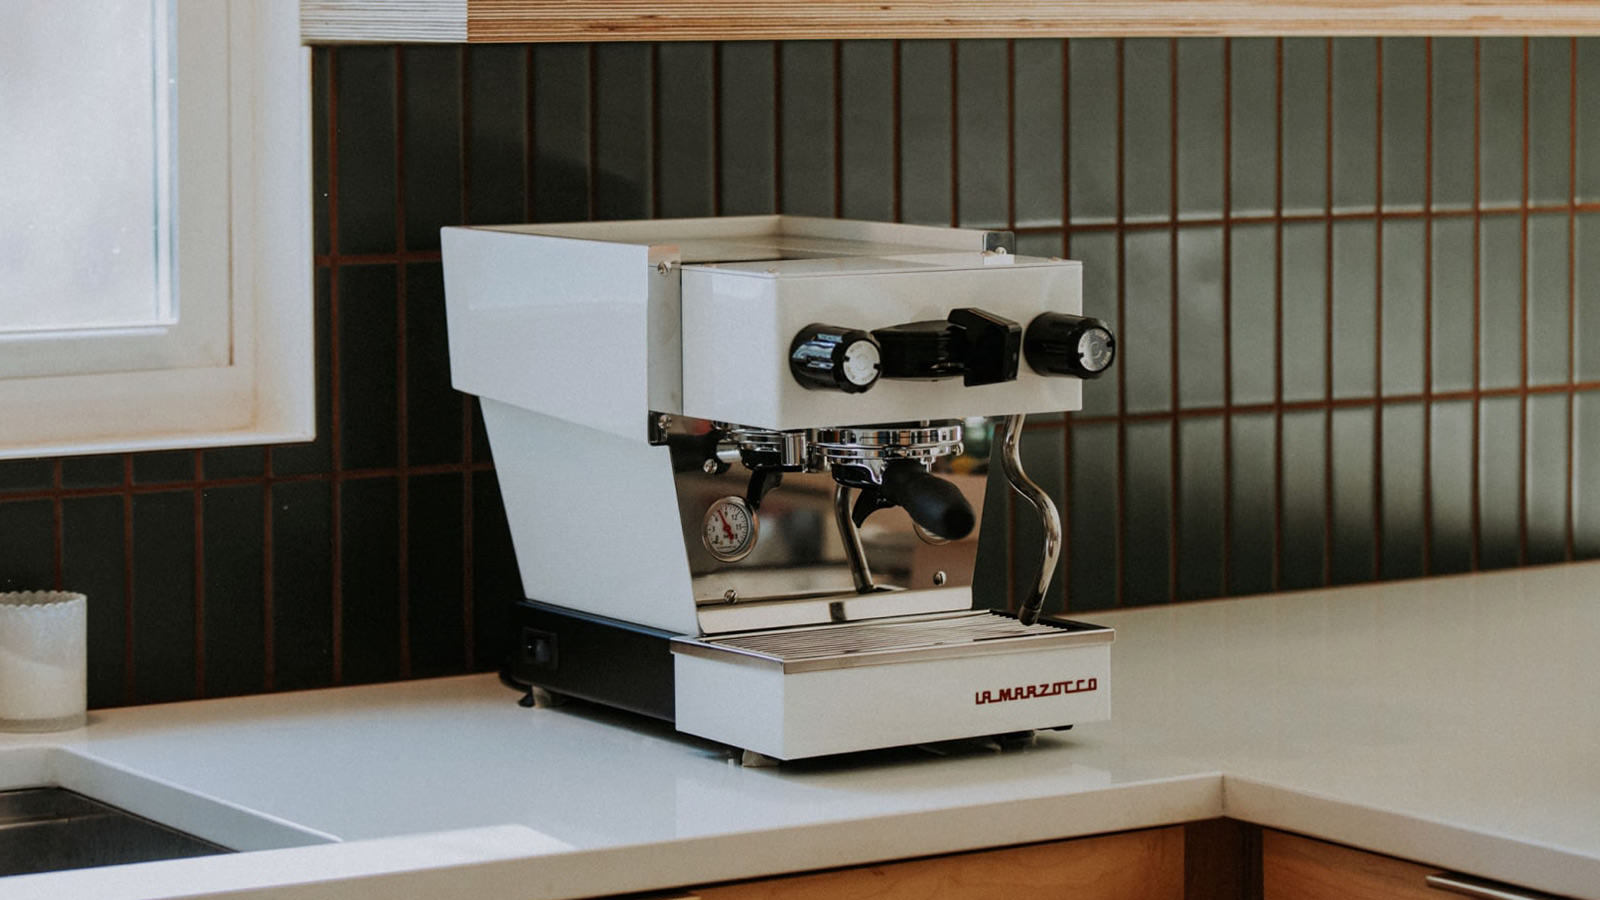 La Marzocco Linea Micra Review: The Best Home Espresso Maker?